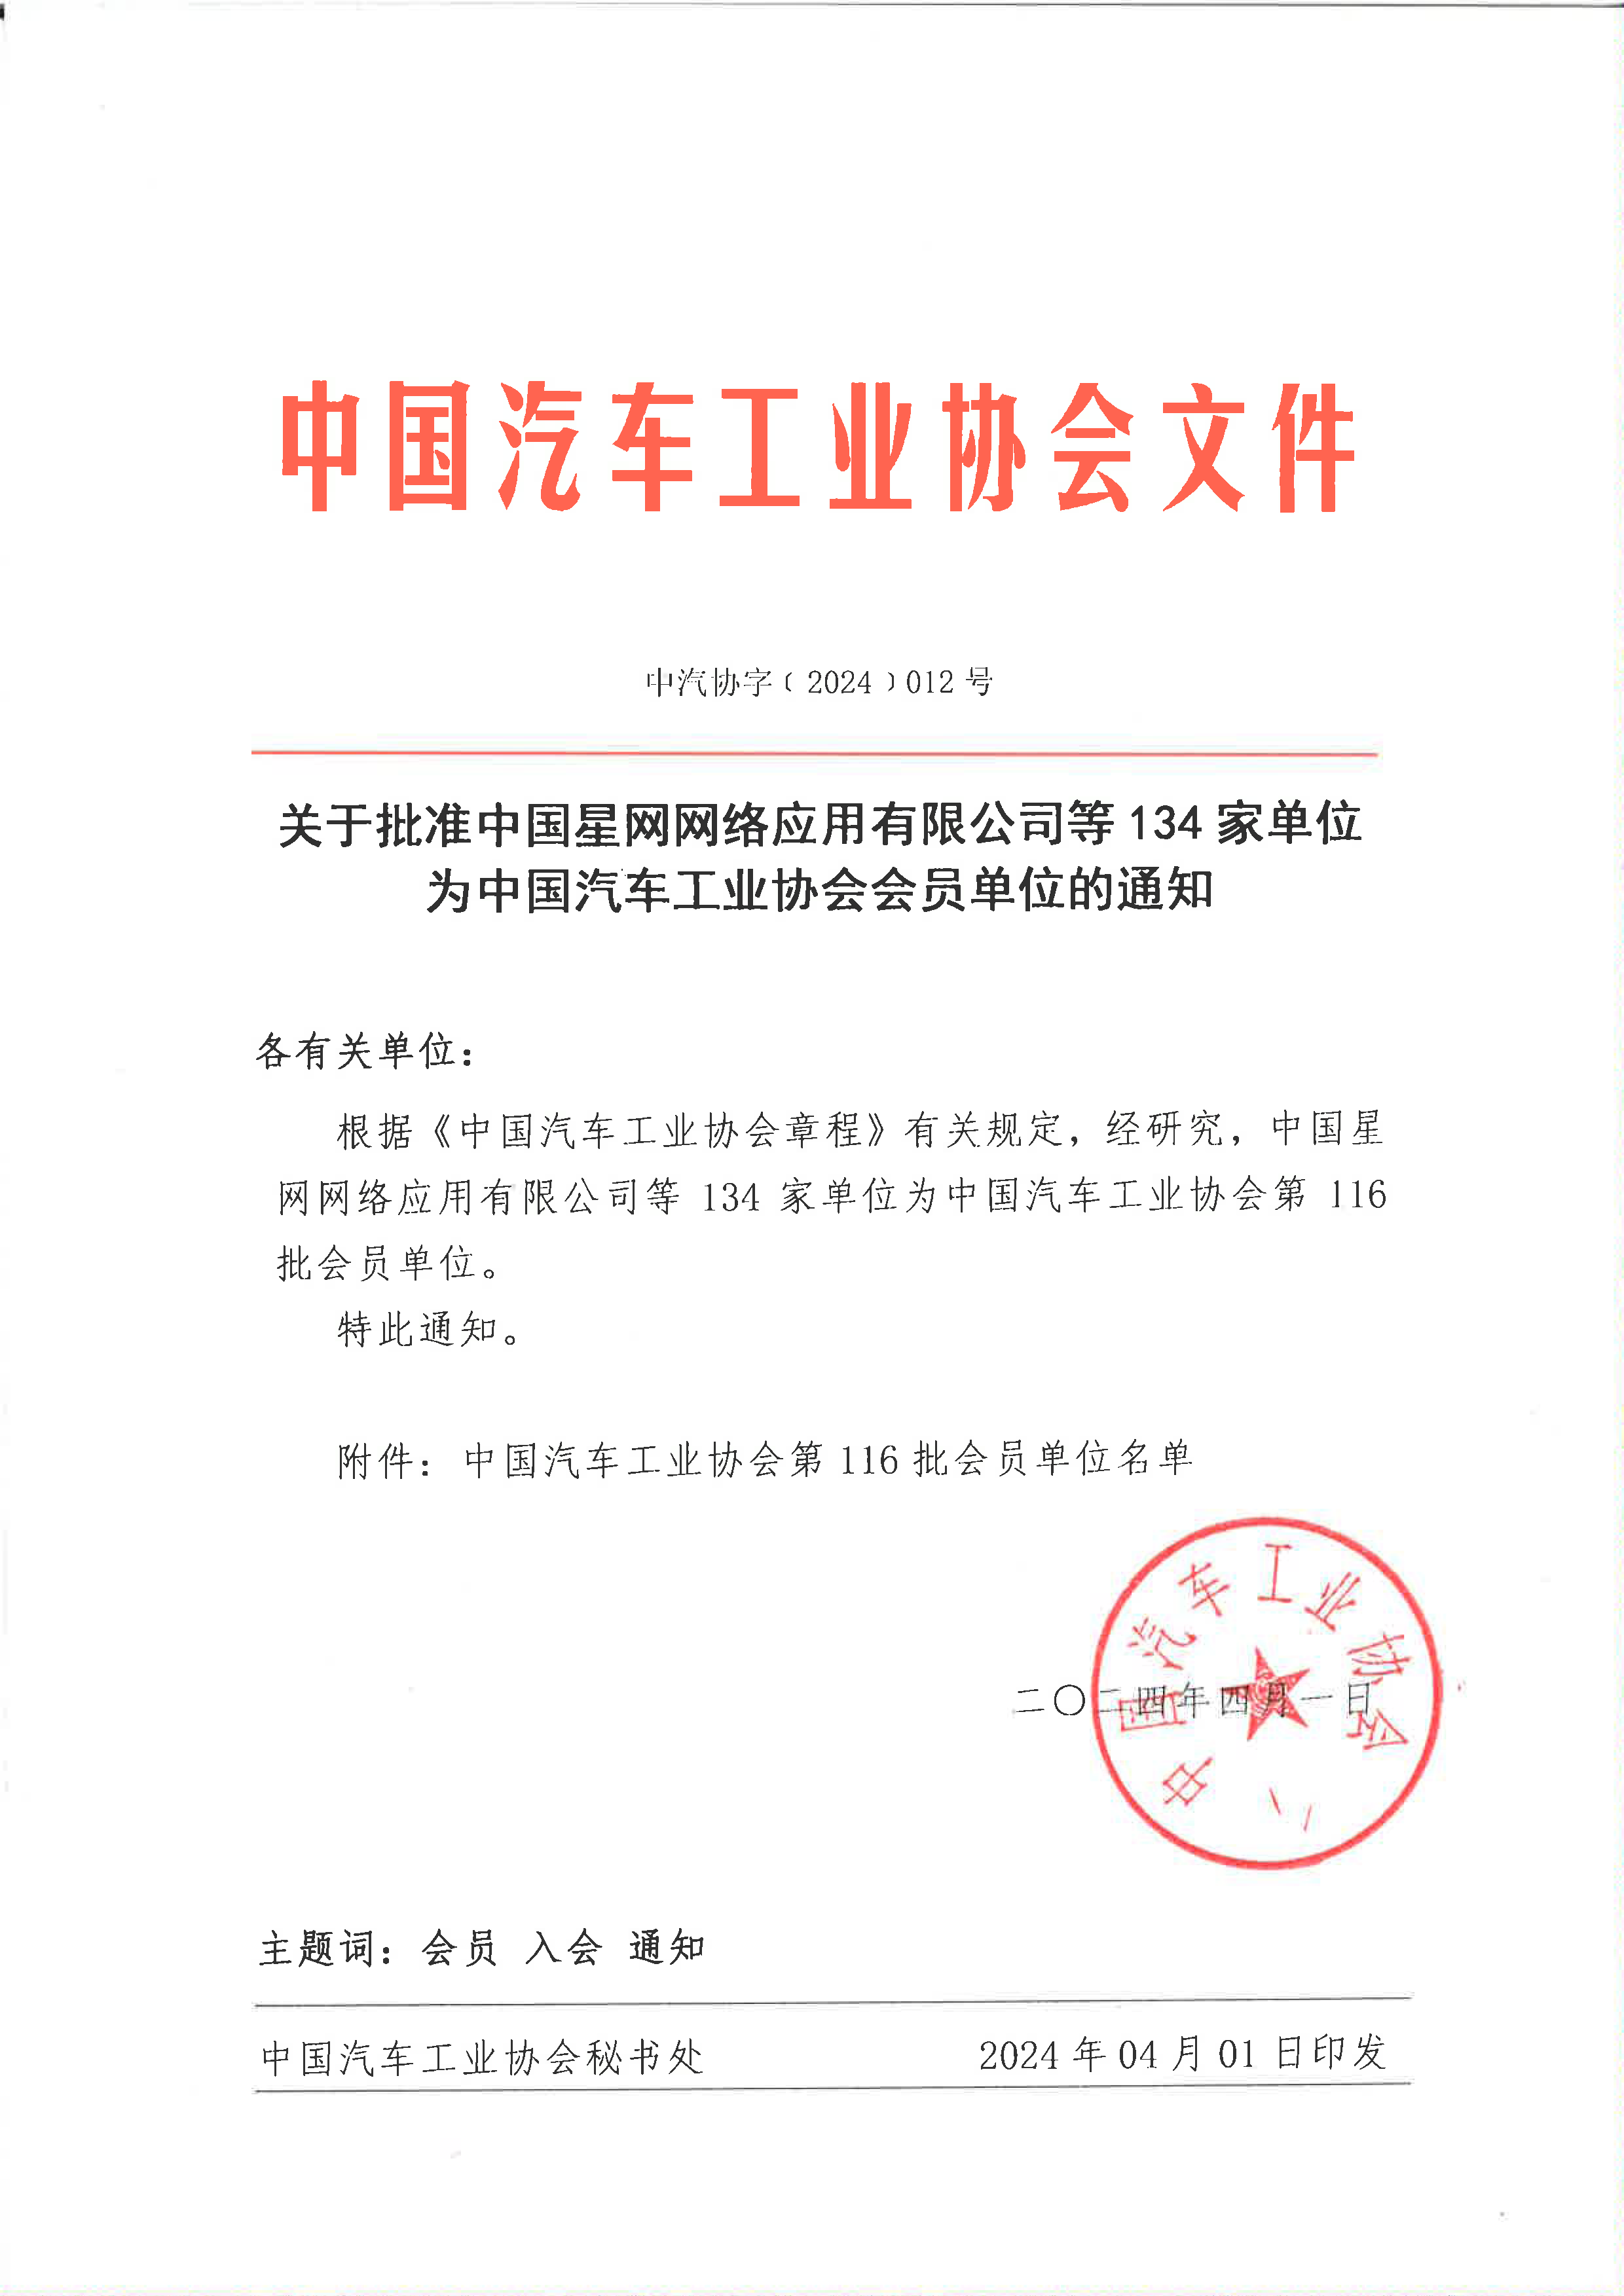 关于批准中国星网网络应用有限公司等134家单位为中国汽车工业协会会员单位的通知